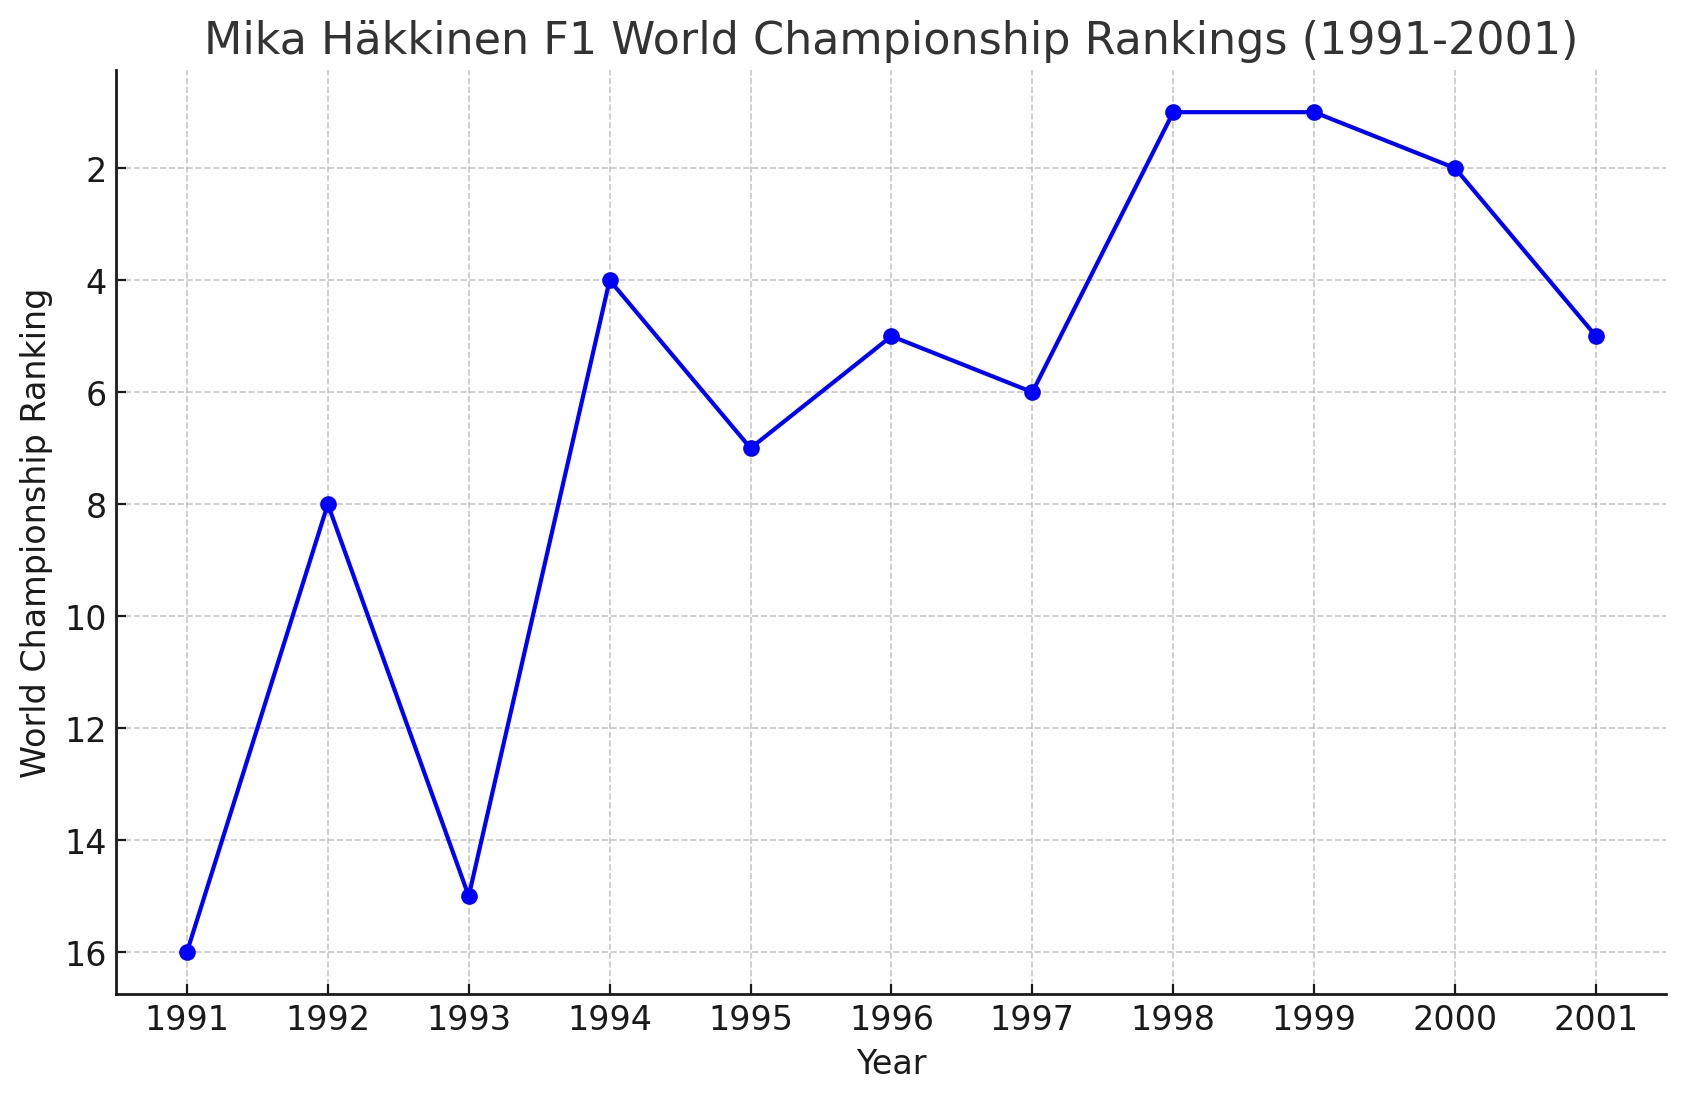 Mika Häkkinen's Formula 1 World Championship rankings